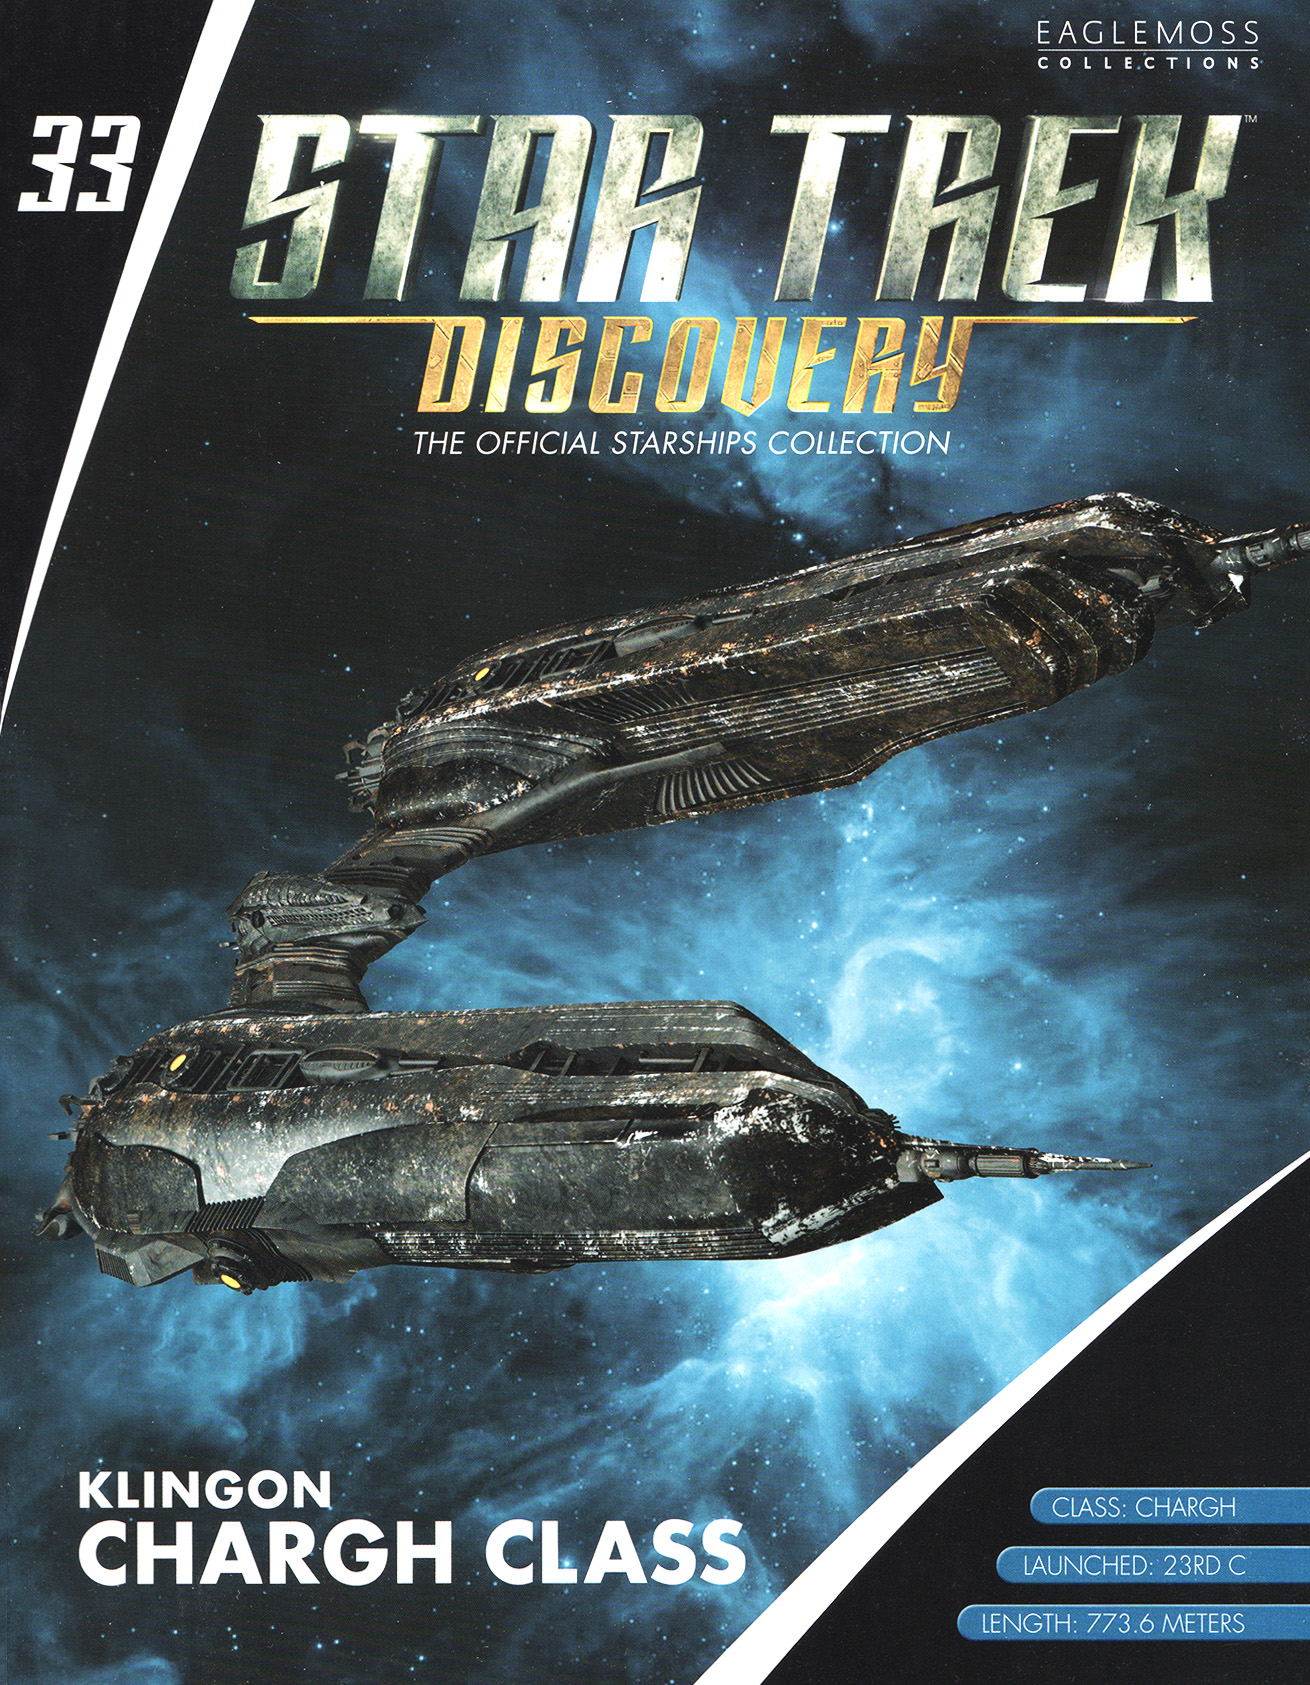 Eaglemoss Star Trek Starships Discovery Issue 33